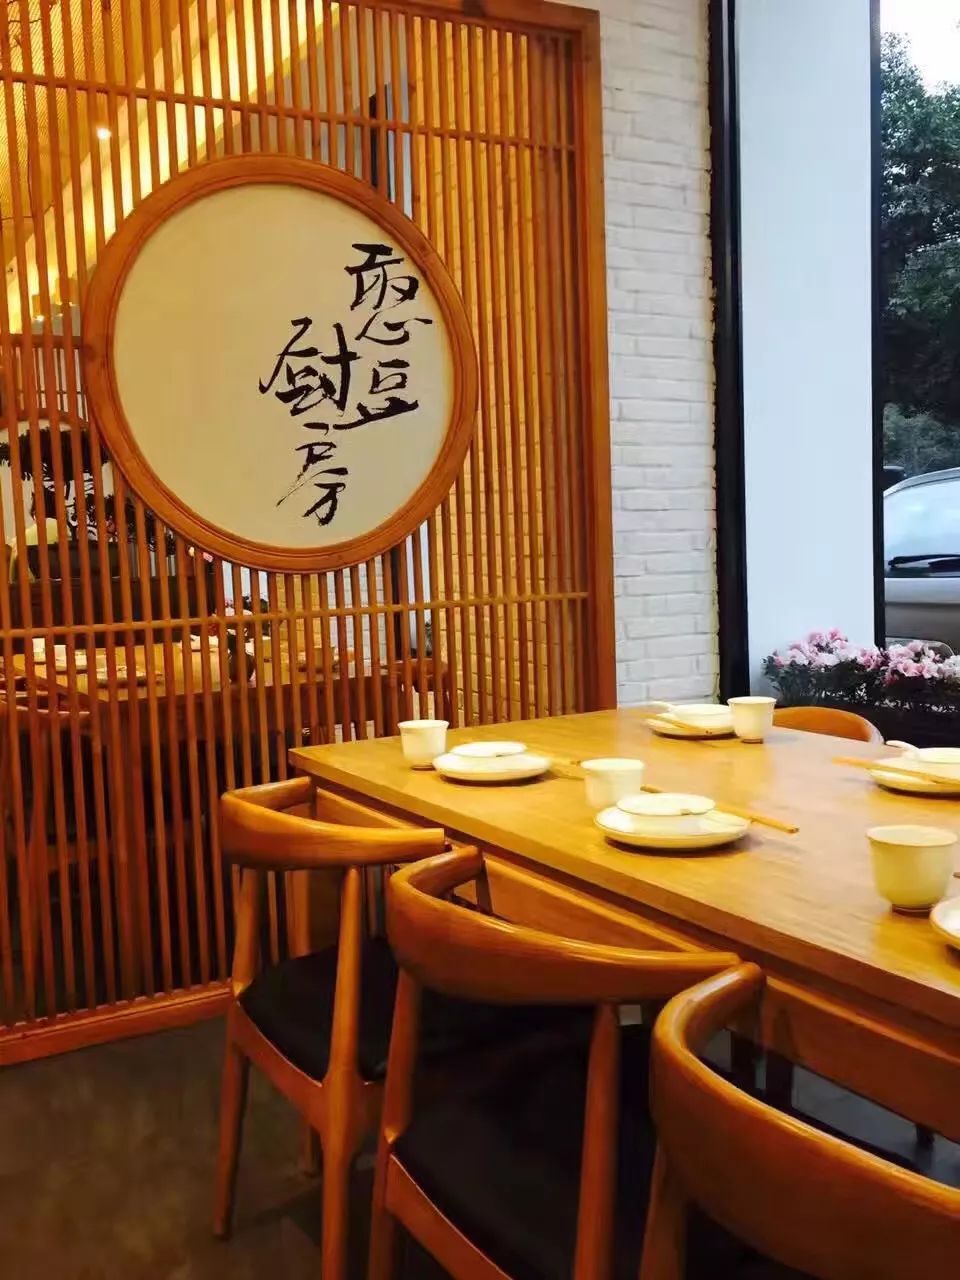 辽阳广佑寺素食餐厅图片